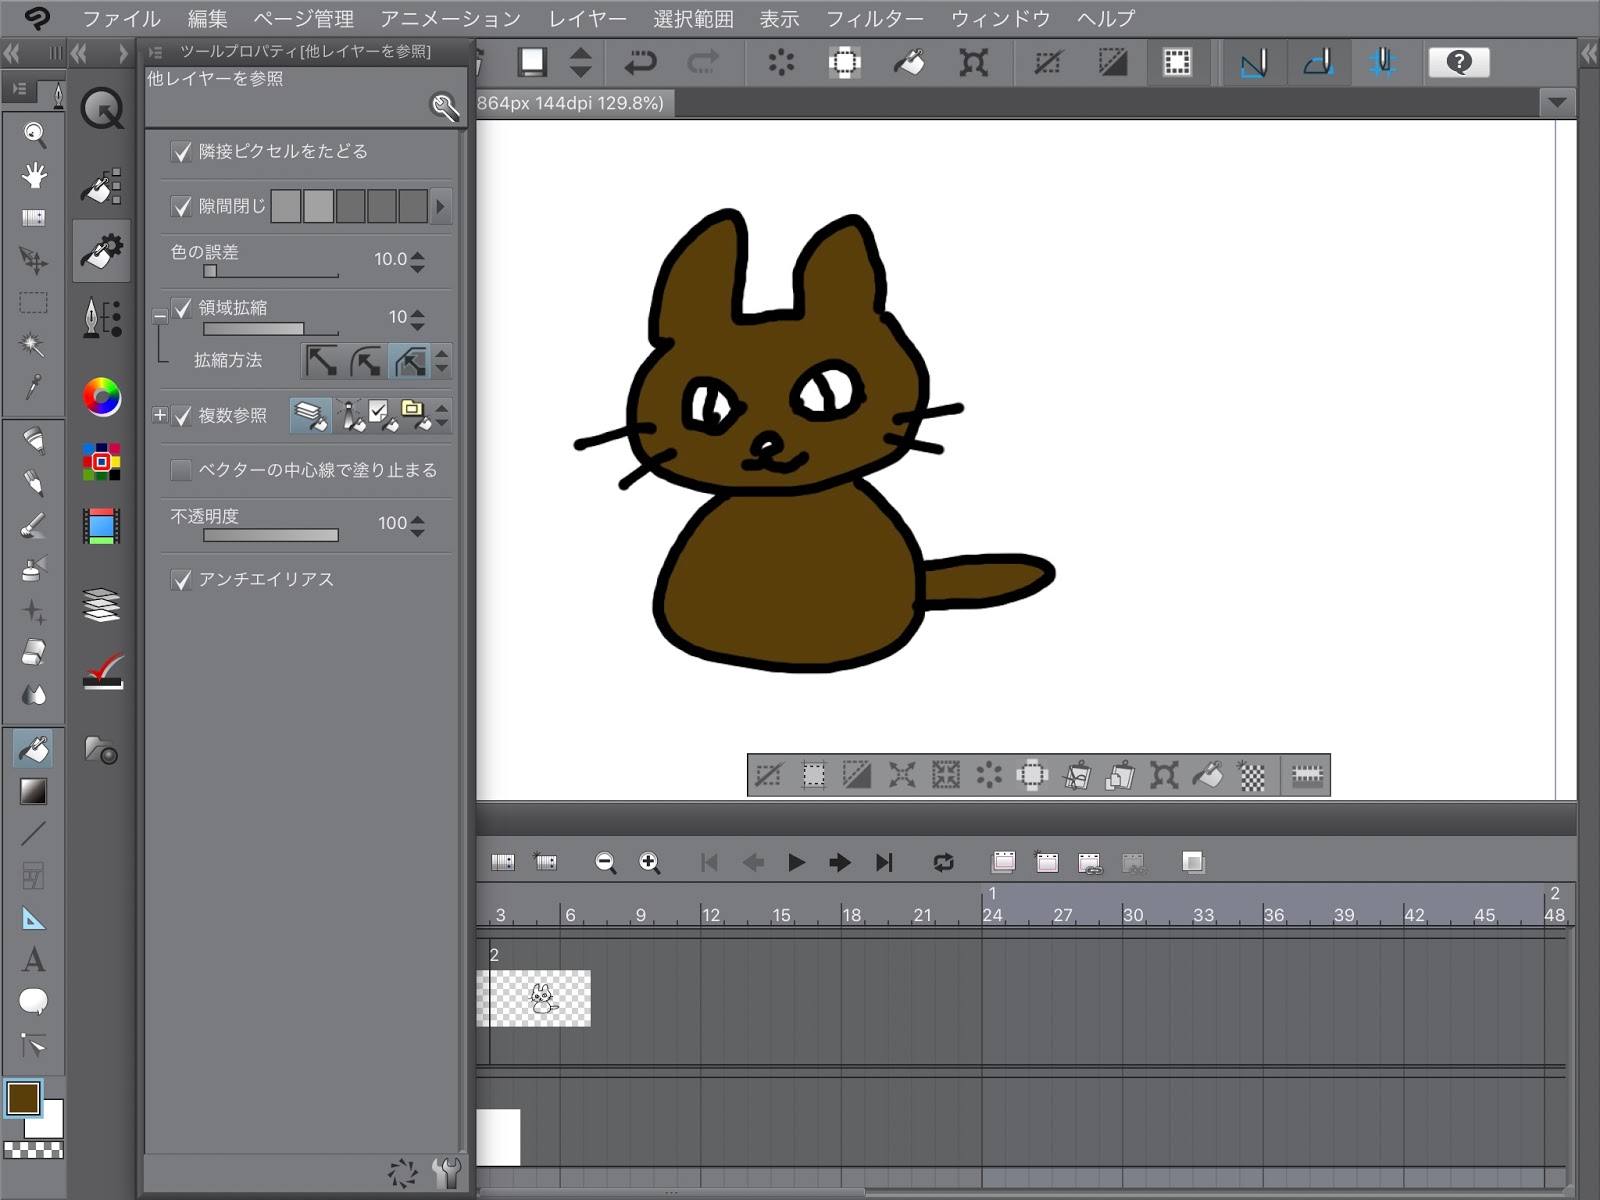 アニメ作りに挑戦 Ipad版のクリップスタジオペイントでアニメを作ろう９ 塗りつぶしツールによる簡単な彩色